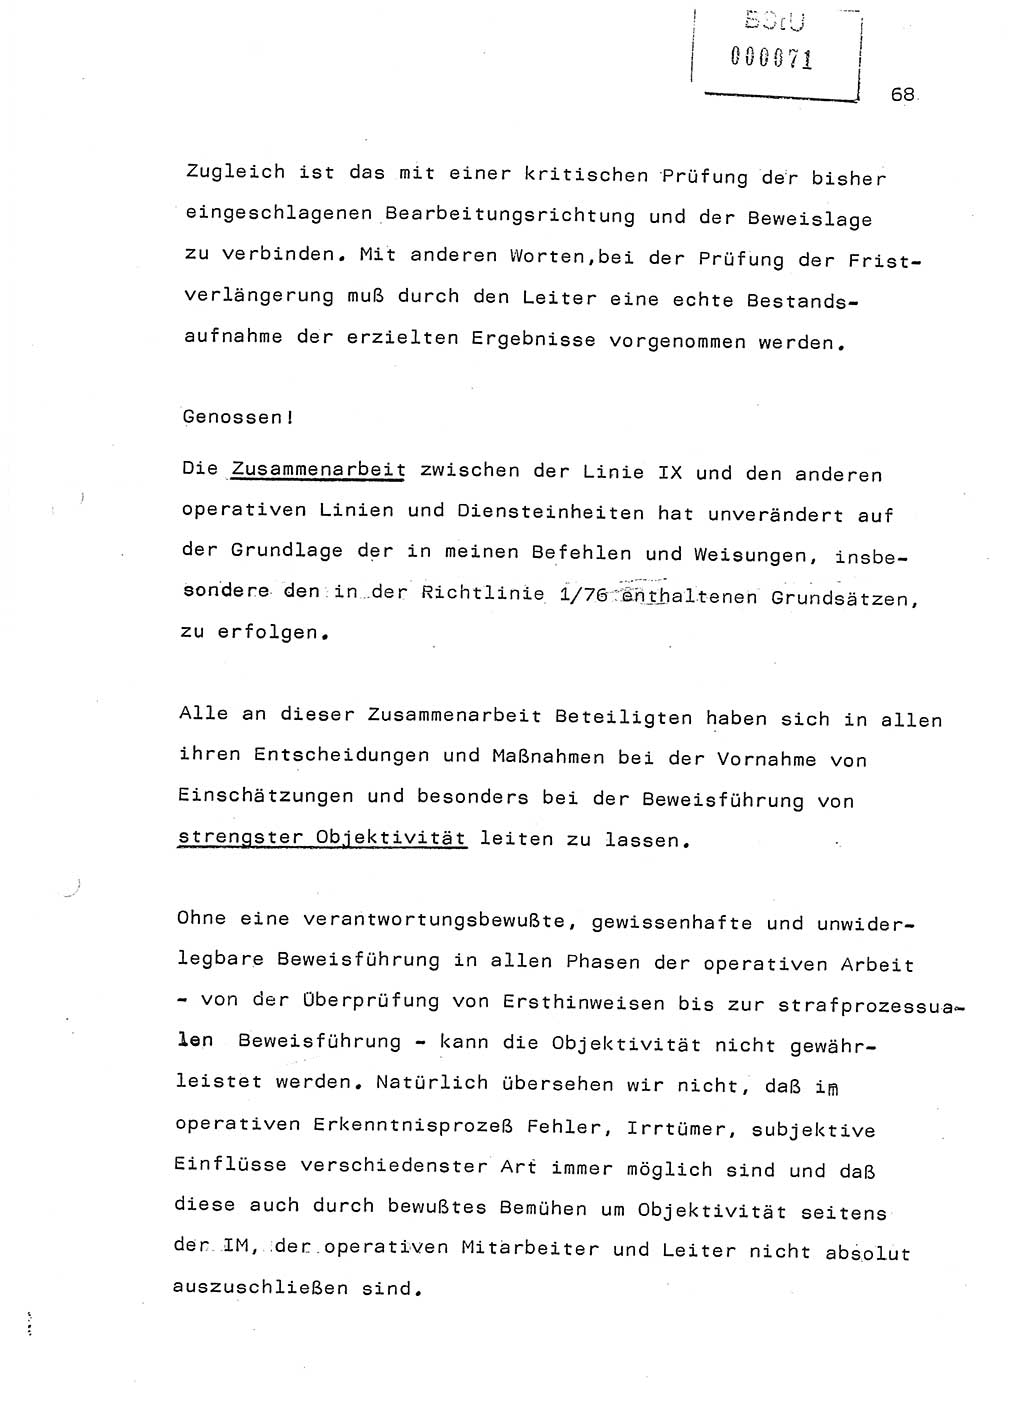 Referat (Generaloberst Erich Mielke) auf der Zentralen Dienstkonferenz am 24.5.1979 [Ministerium für Staatssicherheit (MfS), Deutsche Demokratische Republik (DDR), Der Minister], Berlin 1979, Seite 68 (Ref. DK DDR MfS Min. /79 1979, S. 68)